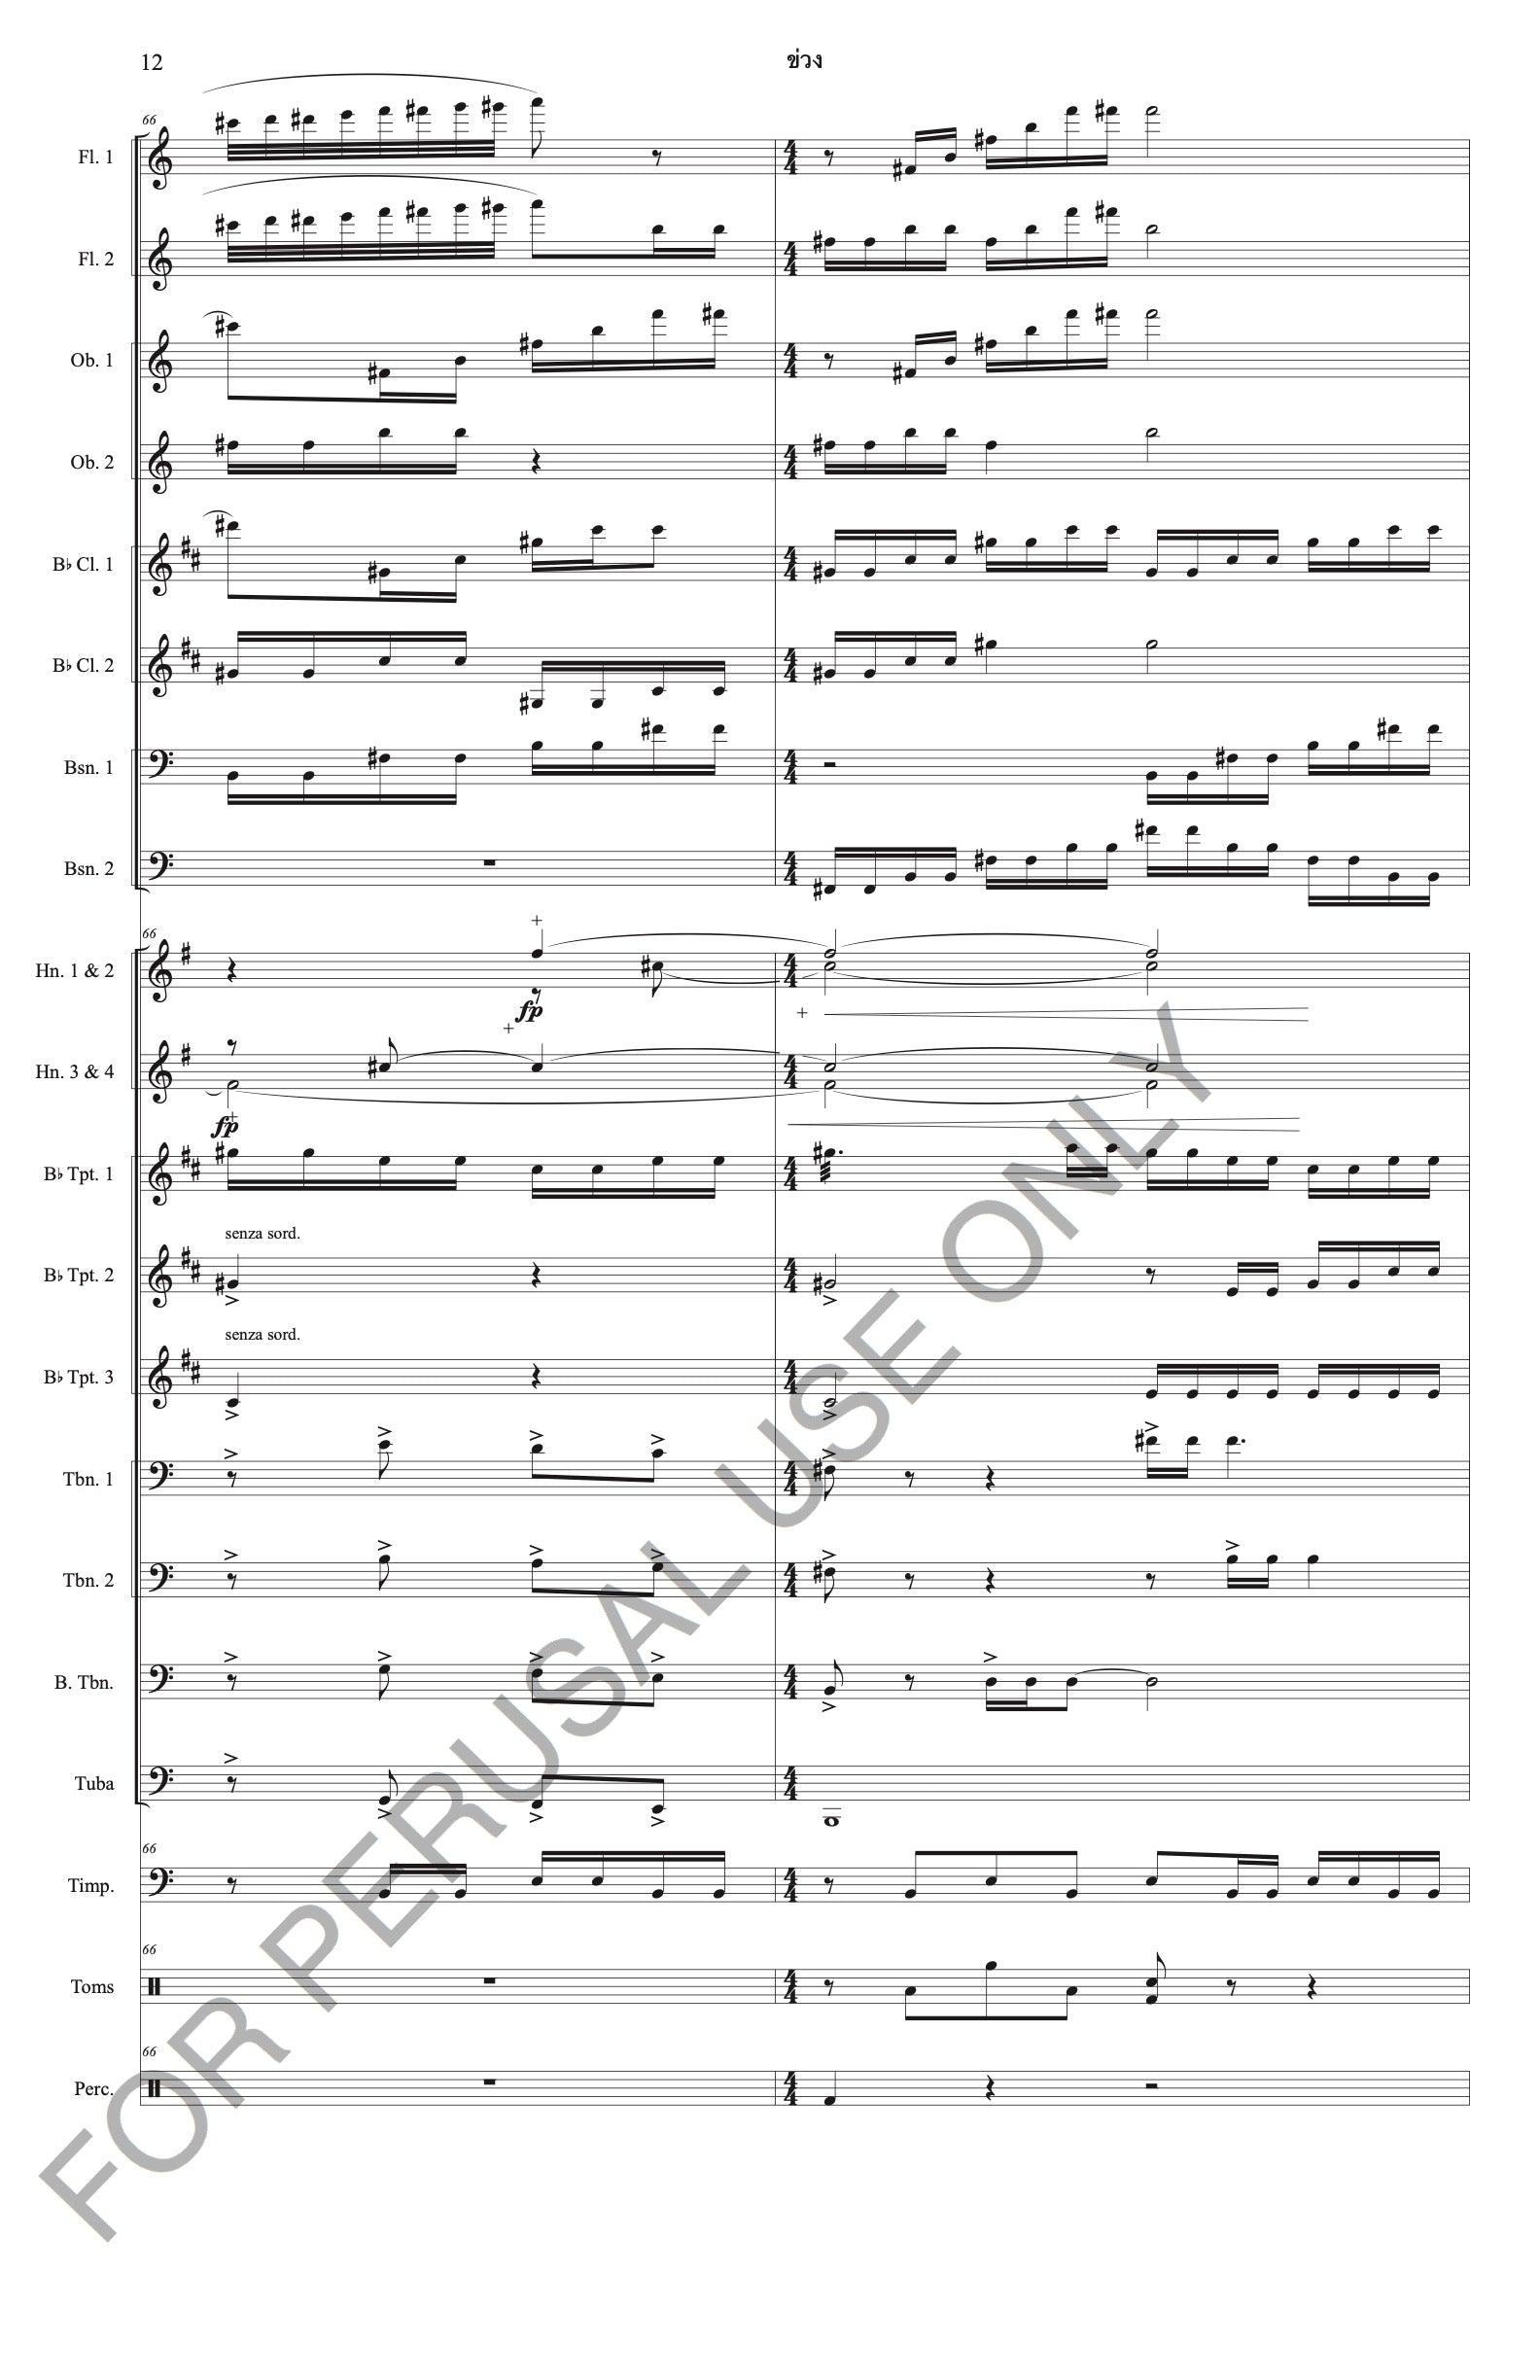 ข่วง (Kwuang)-Courtyard for Wind Symphony (score+parts) - ChaipruckMekara